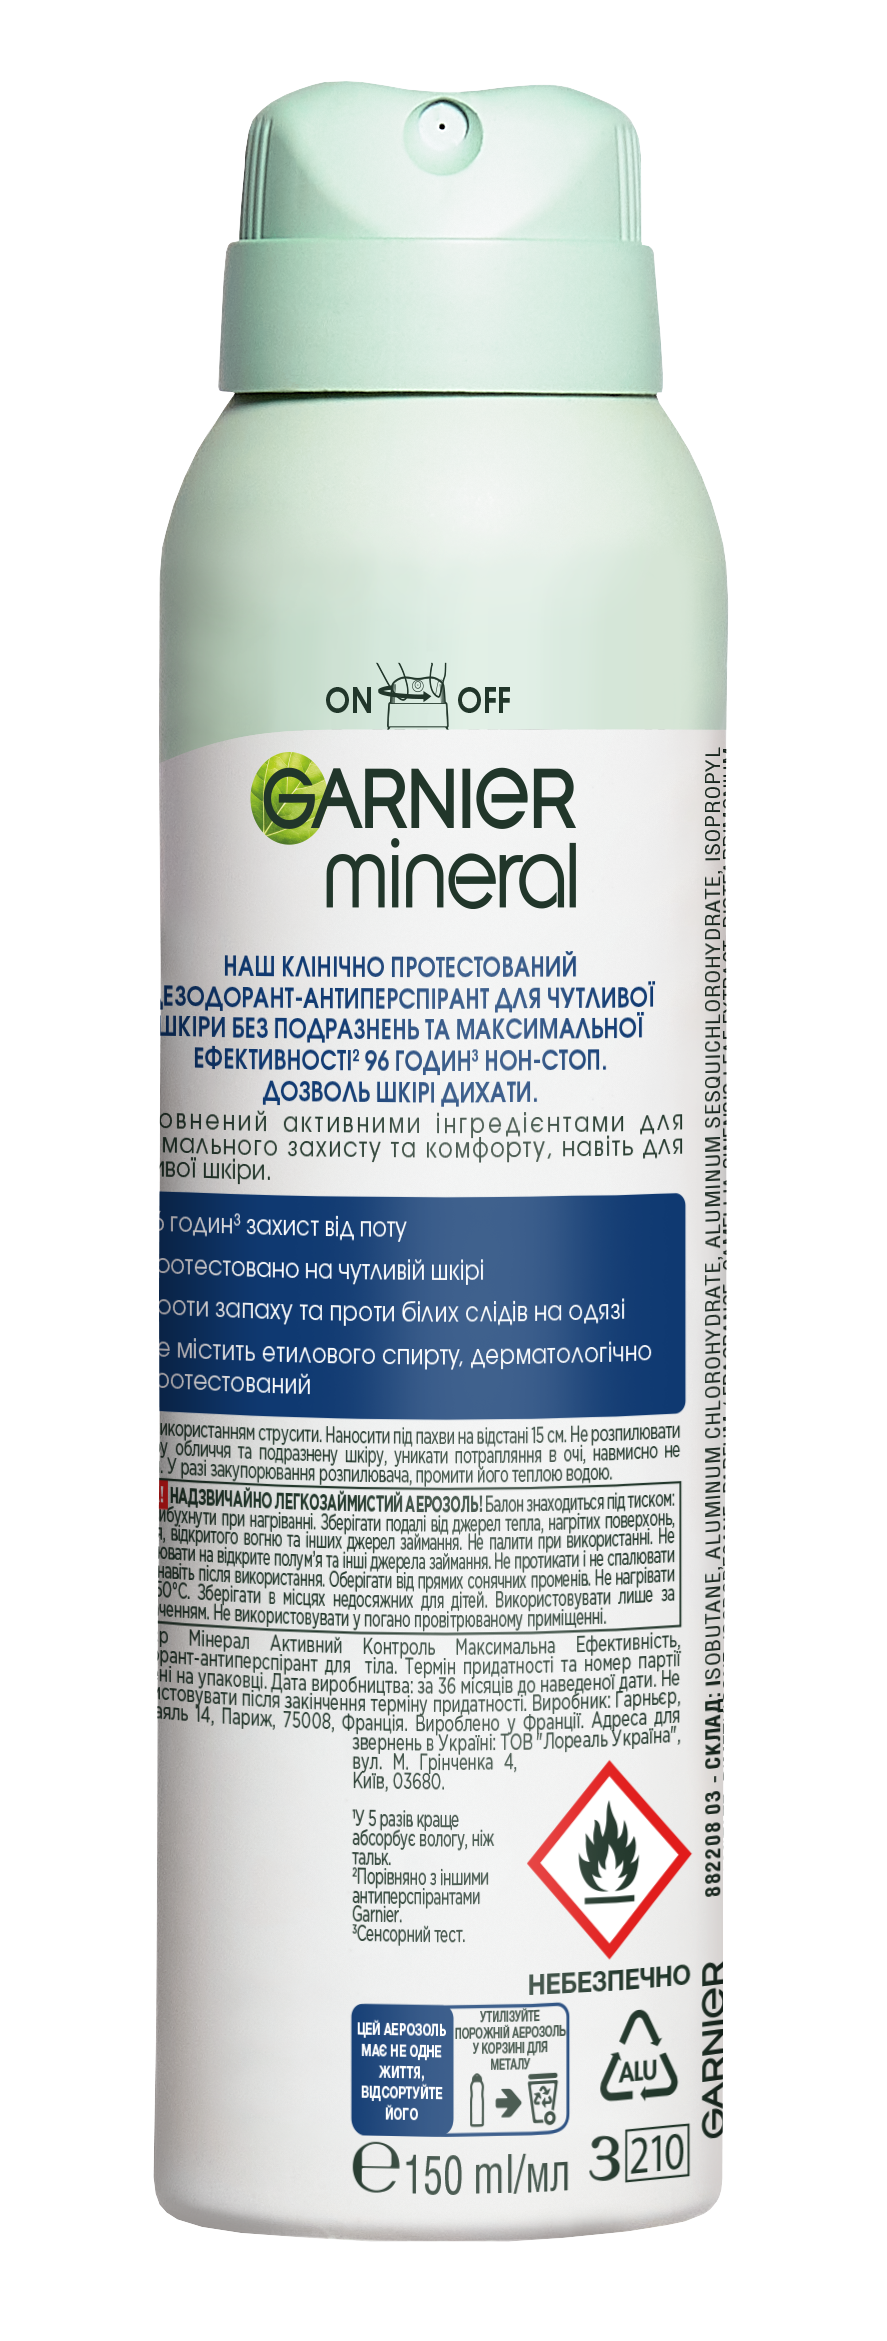 Дезодорант-антиперспирант Garnier Mineral Активный контроль и максимальная эффективность, спрей, 150 мл - фото 2